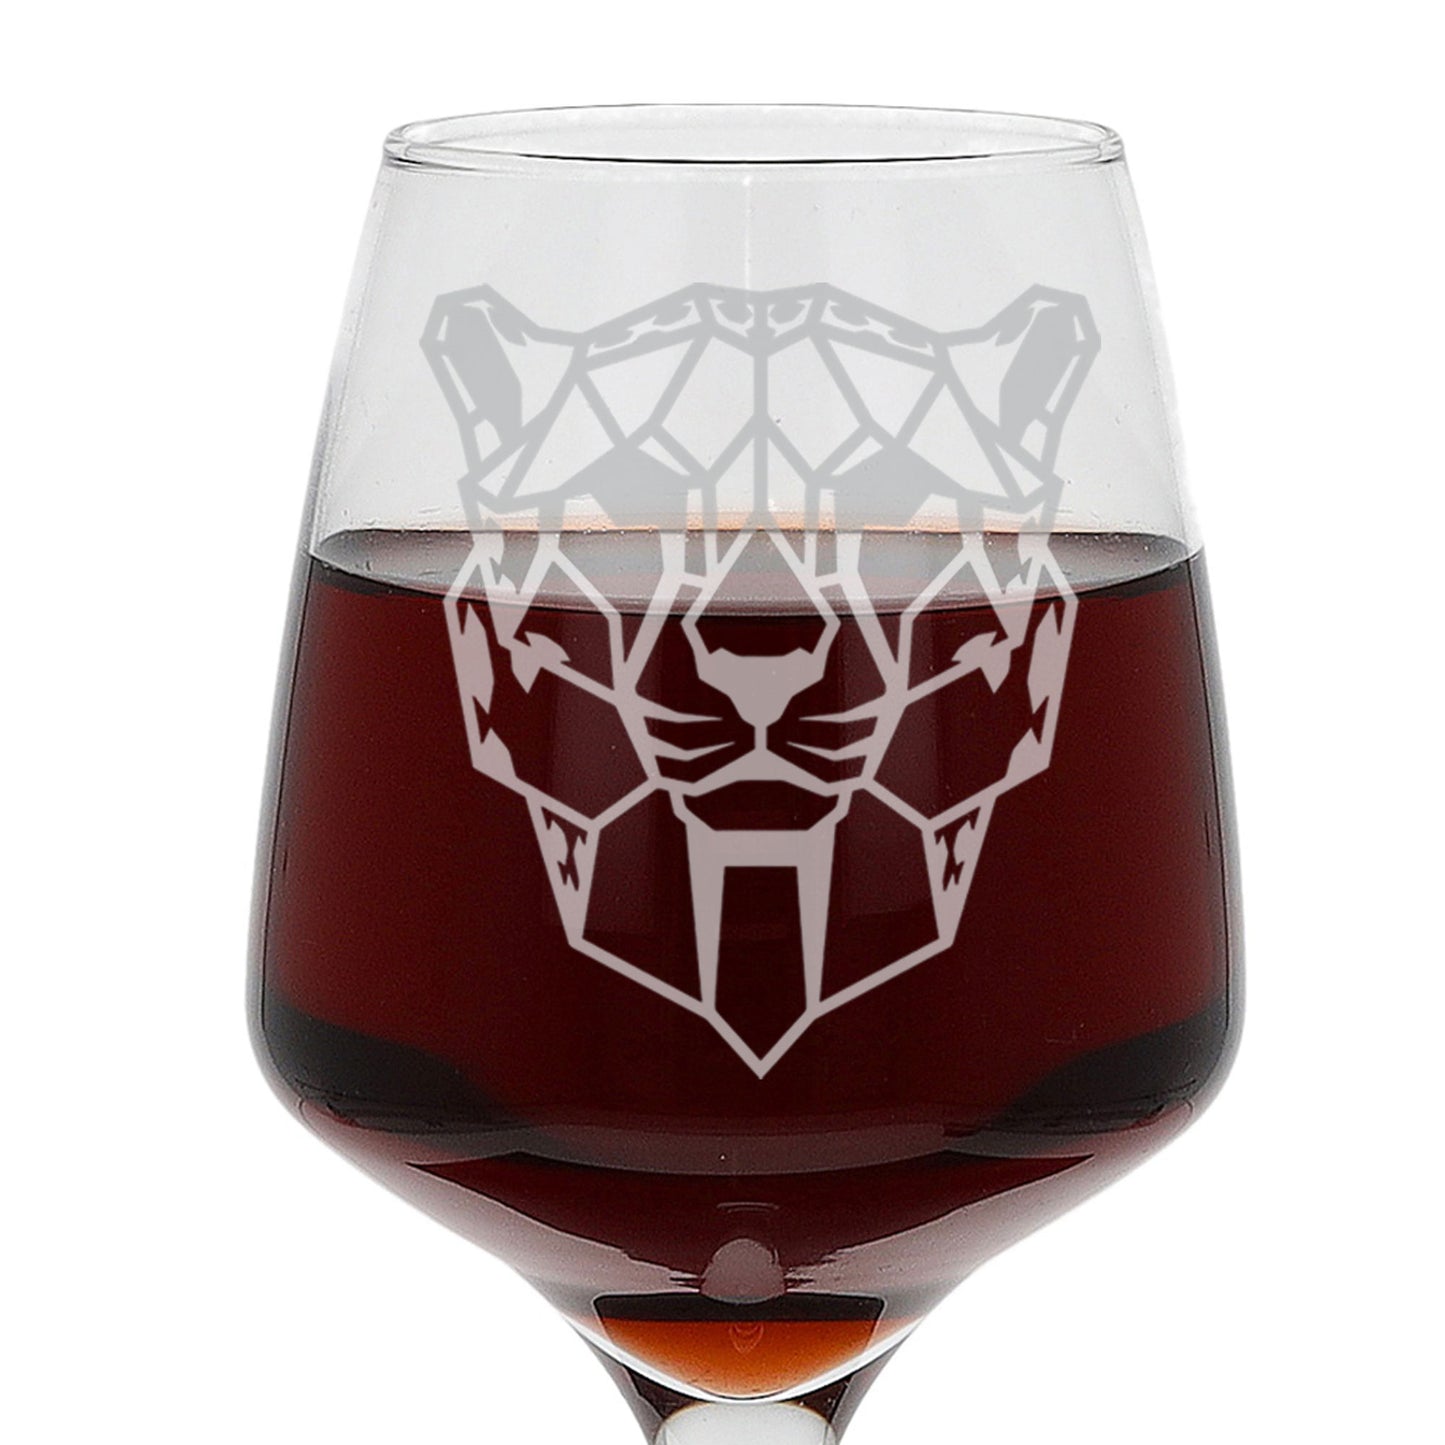 Cheetah Engraved Wine Glass  - Always Looking Good -   